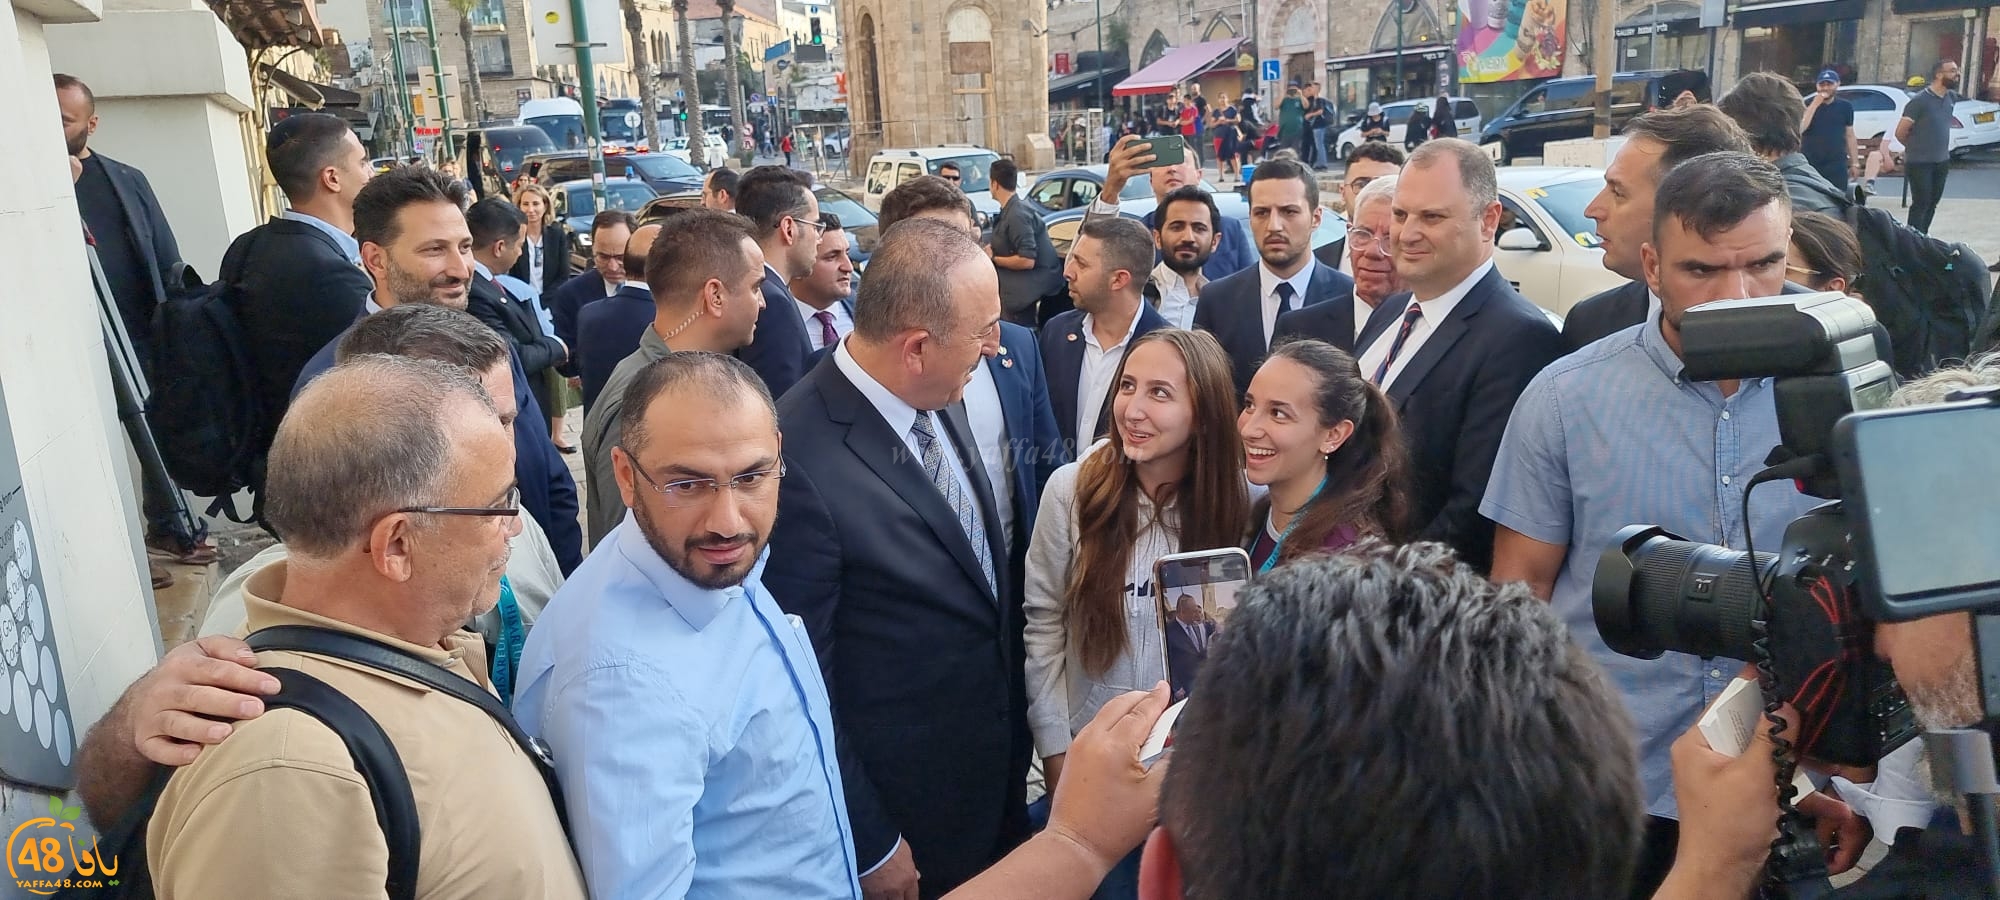  وزير الخارجية التركي في زيارة لمدينة يافا 